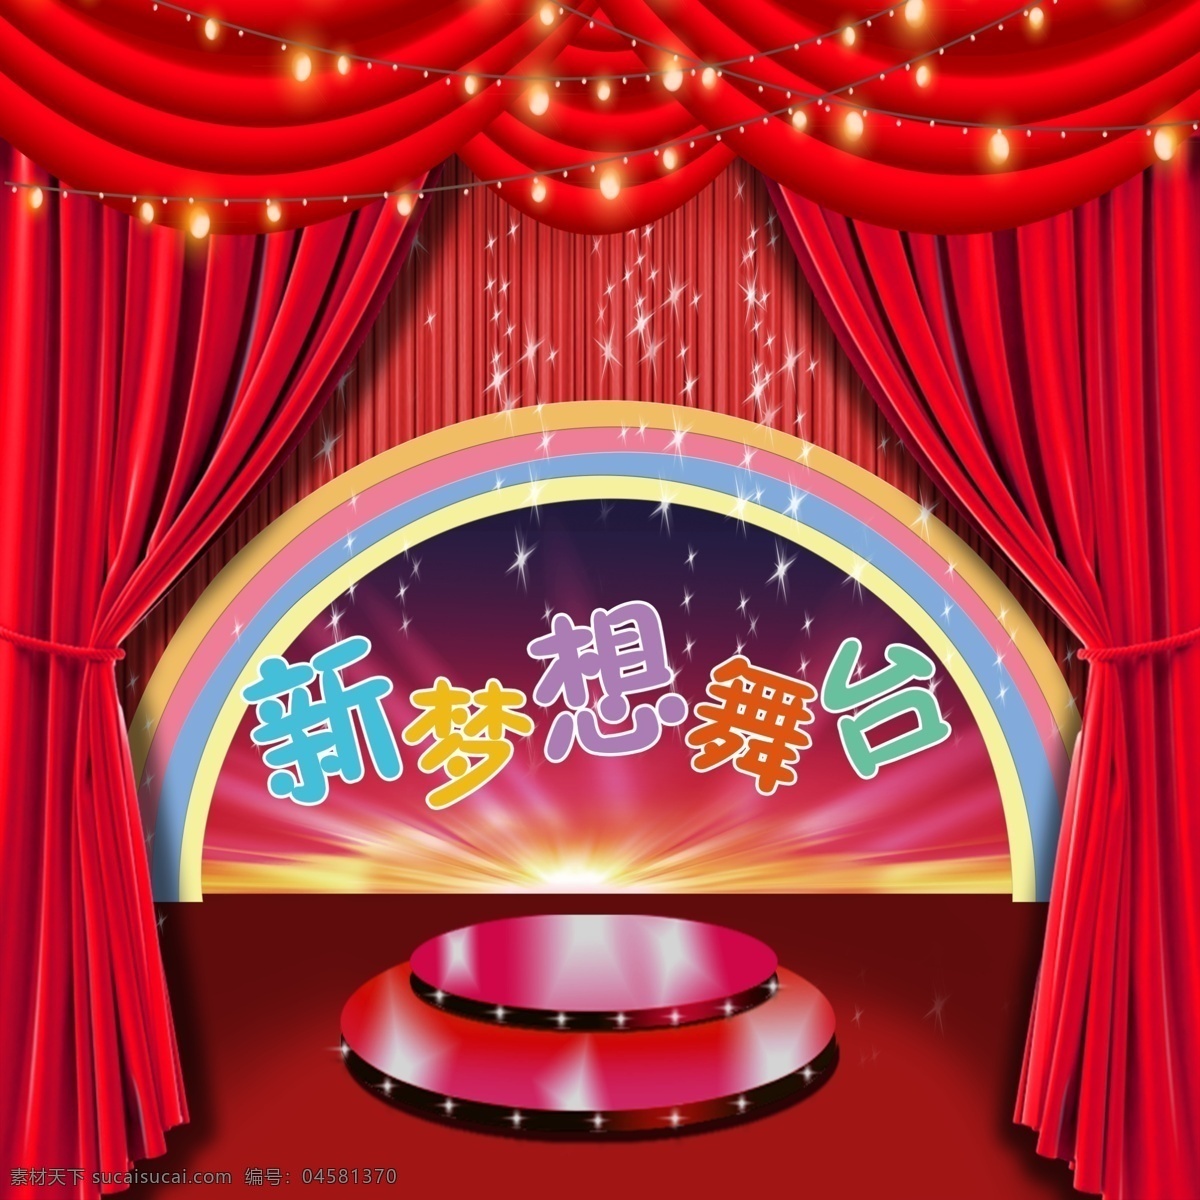 背景板图片 舞台 红色 幕布 幼儿园 背景板 小舞台 新梦想 儿童